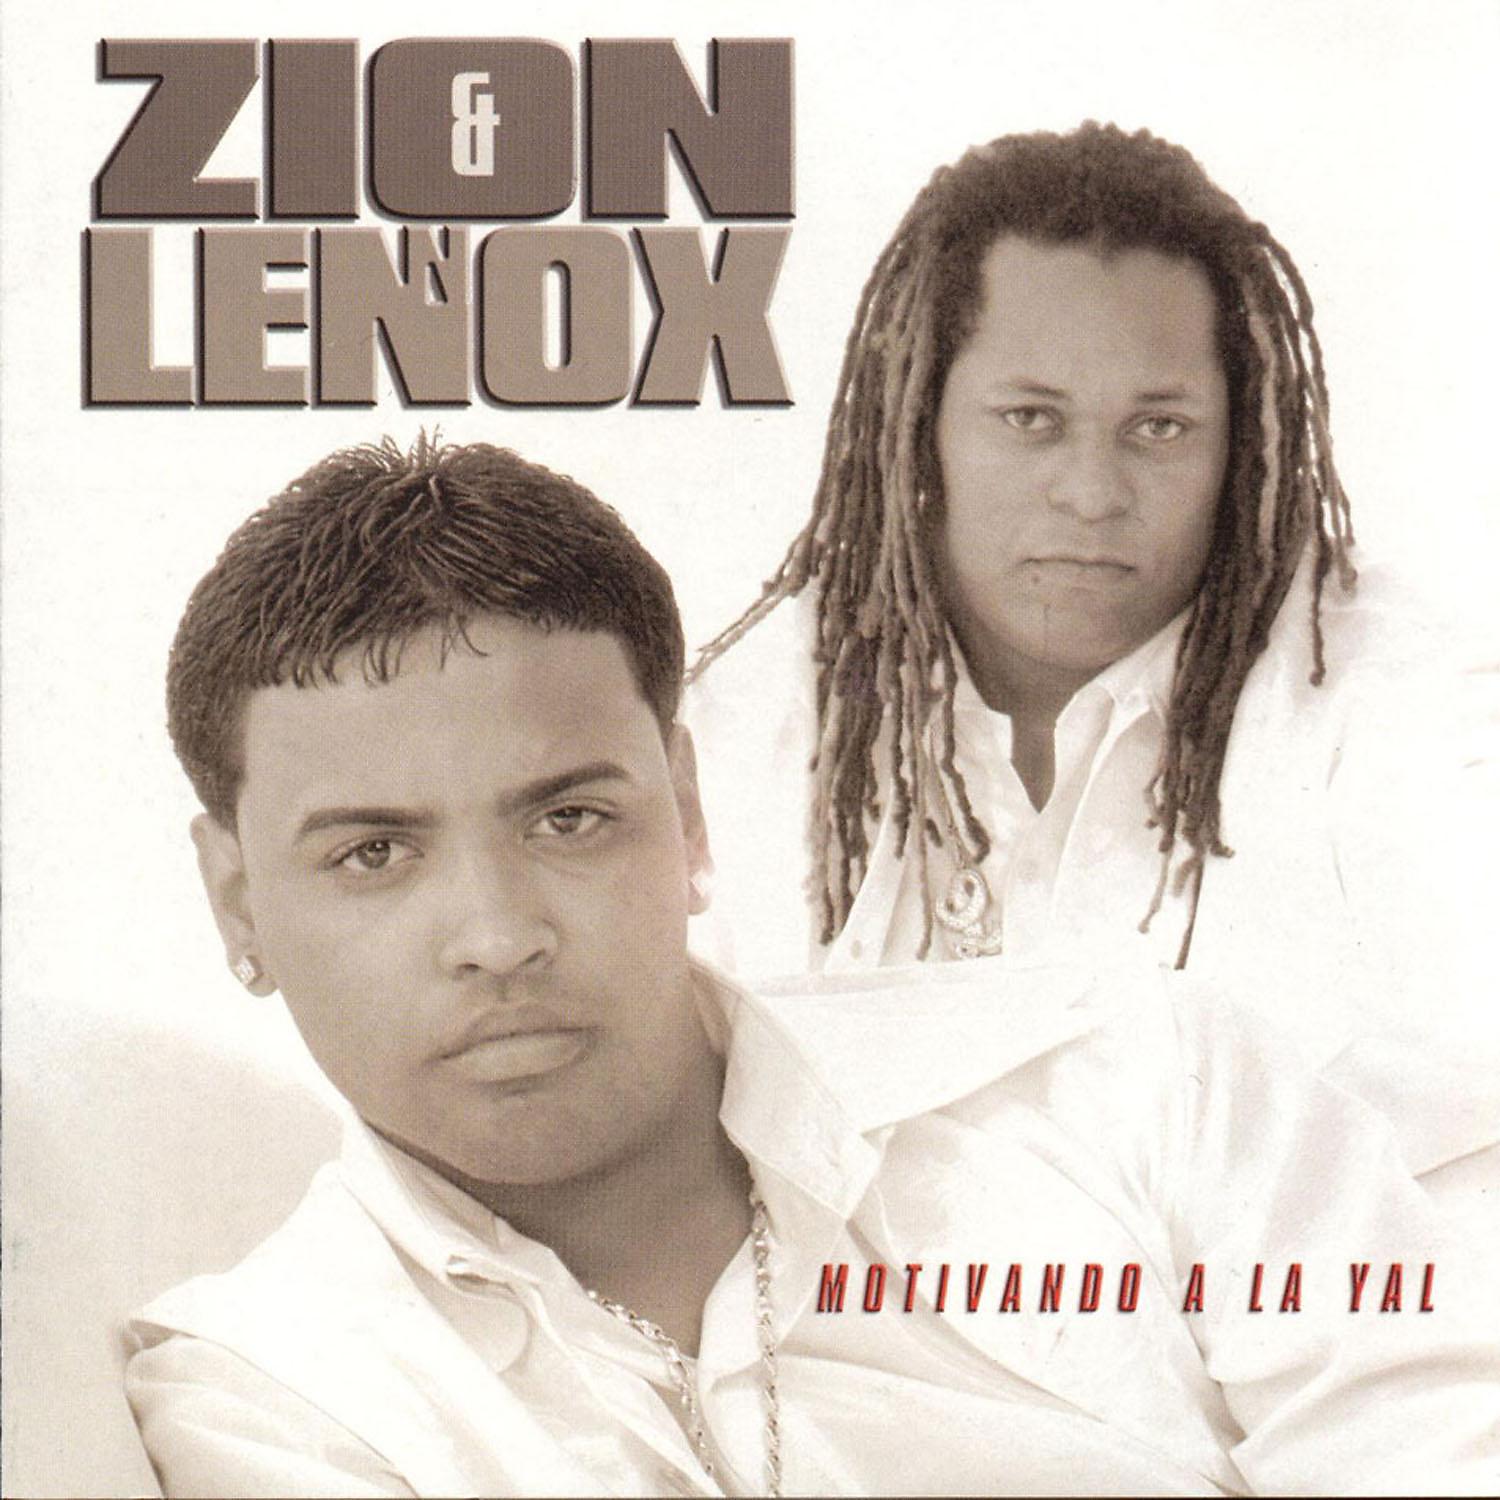 Daddy yankee yo. Zion & Lennox. Zion y Lennox, Daddy Yankee. Motivando a la Yal Zion y Lennox. Daddy Yankee album Cover.